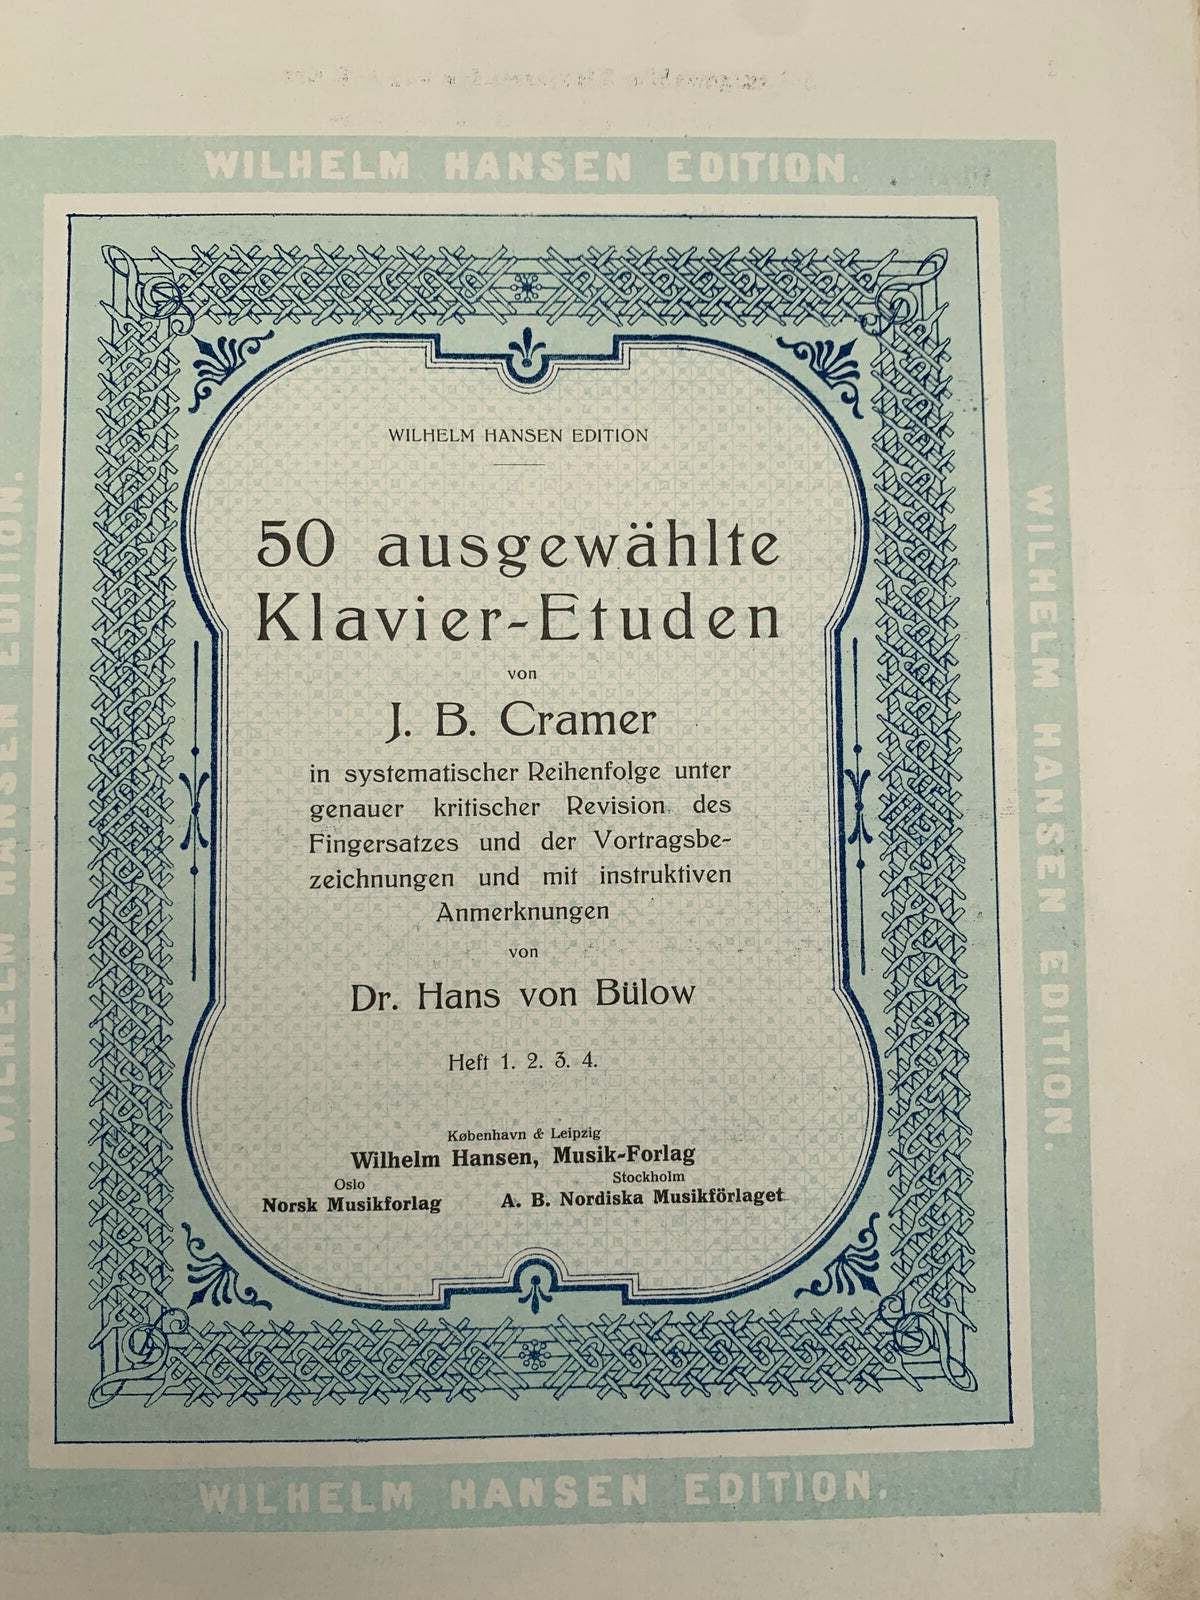 Klaver etuder, Cramer Bülow